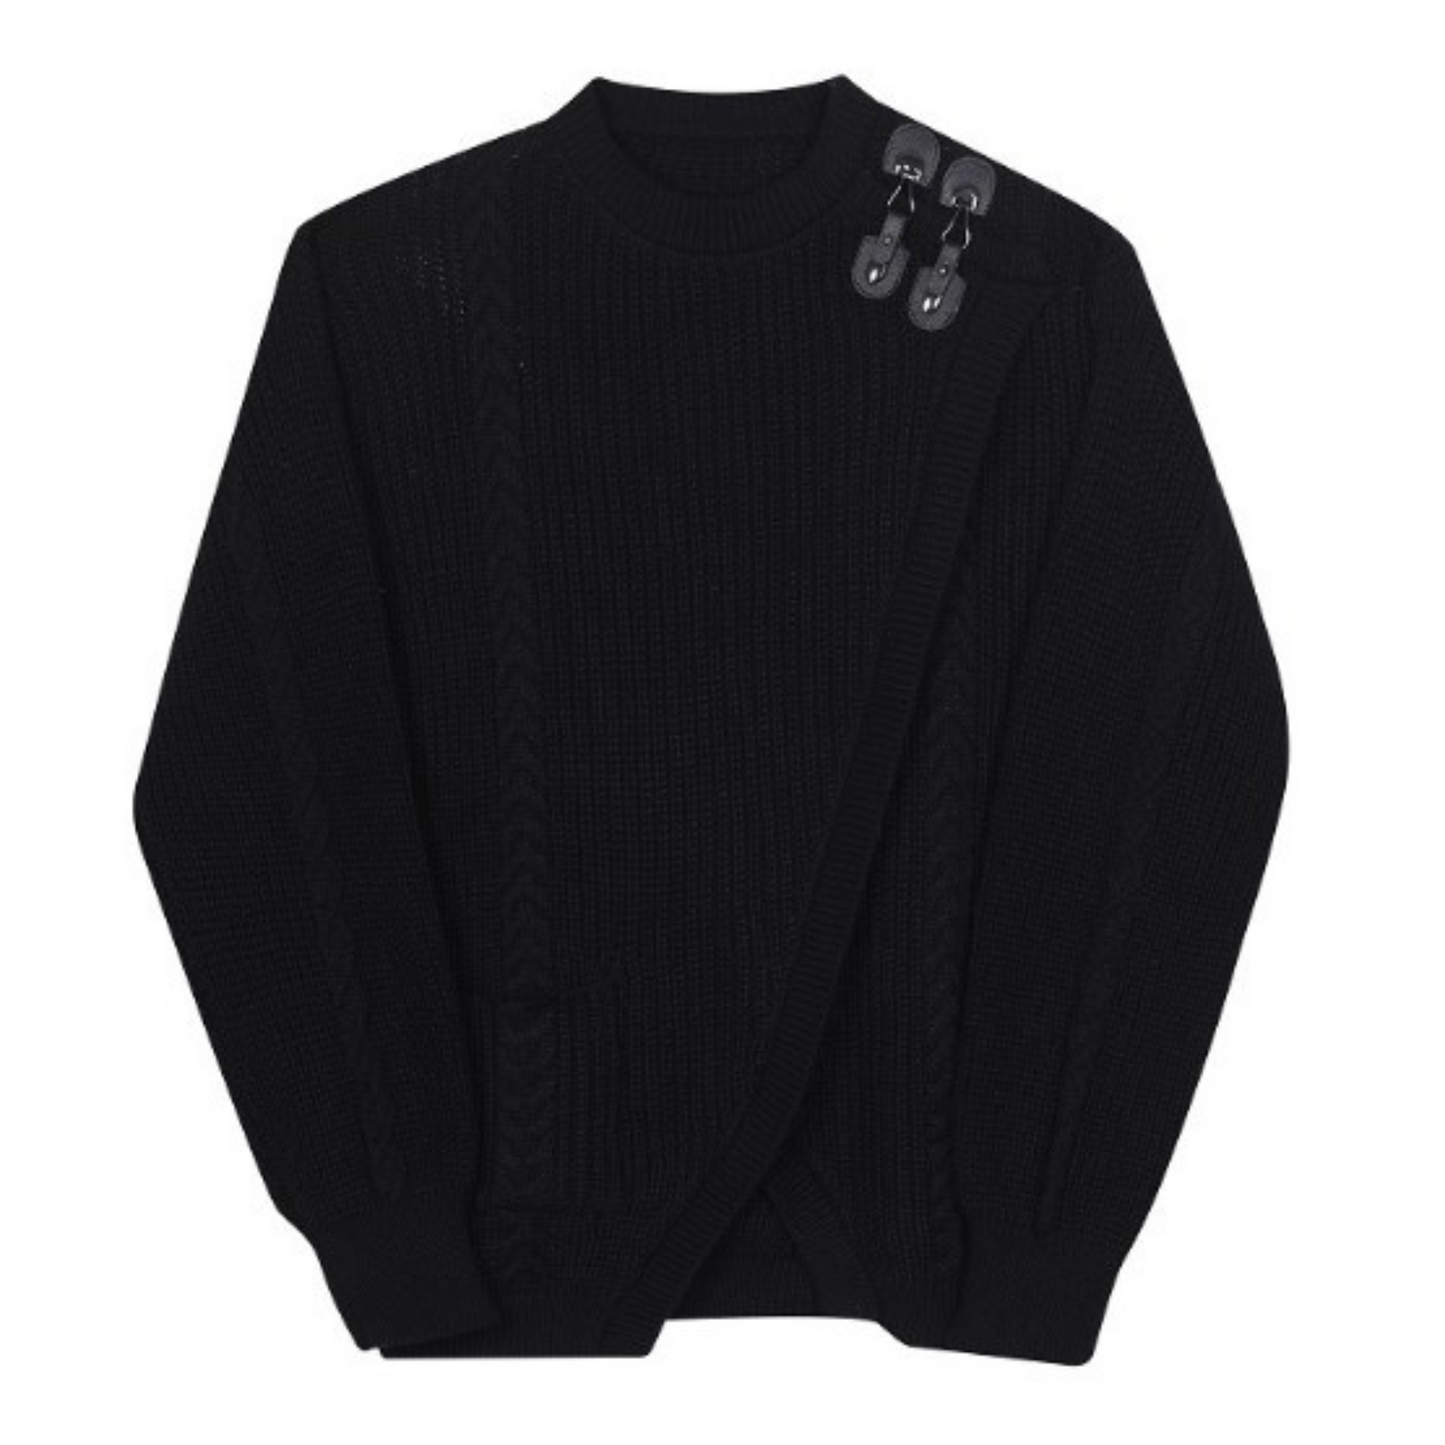 decorative buckle knit sweater EN180